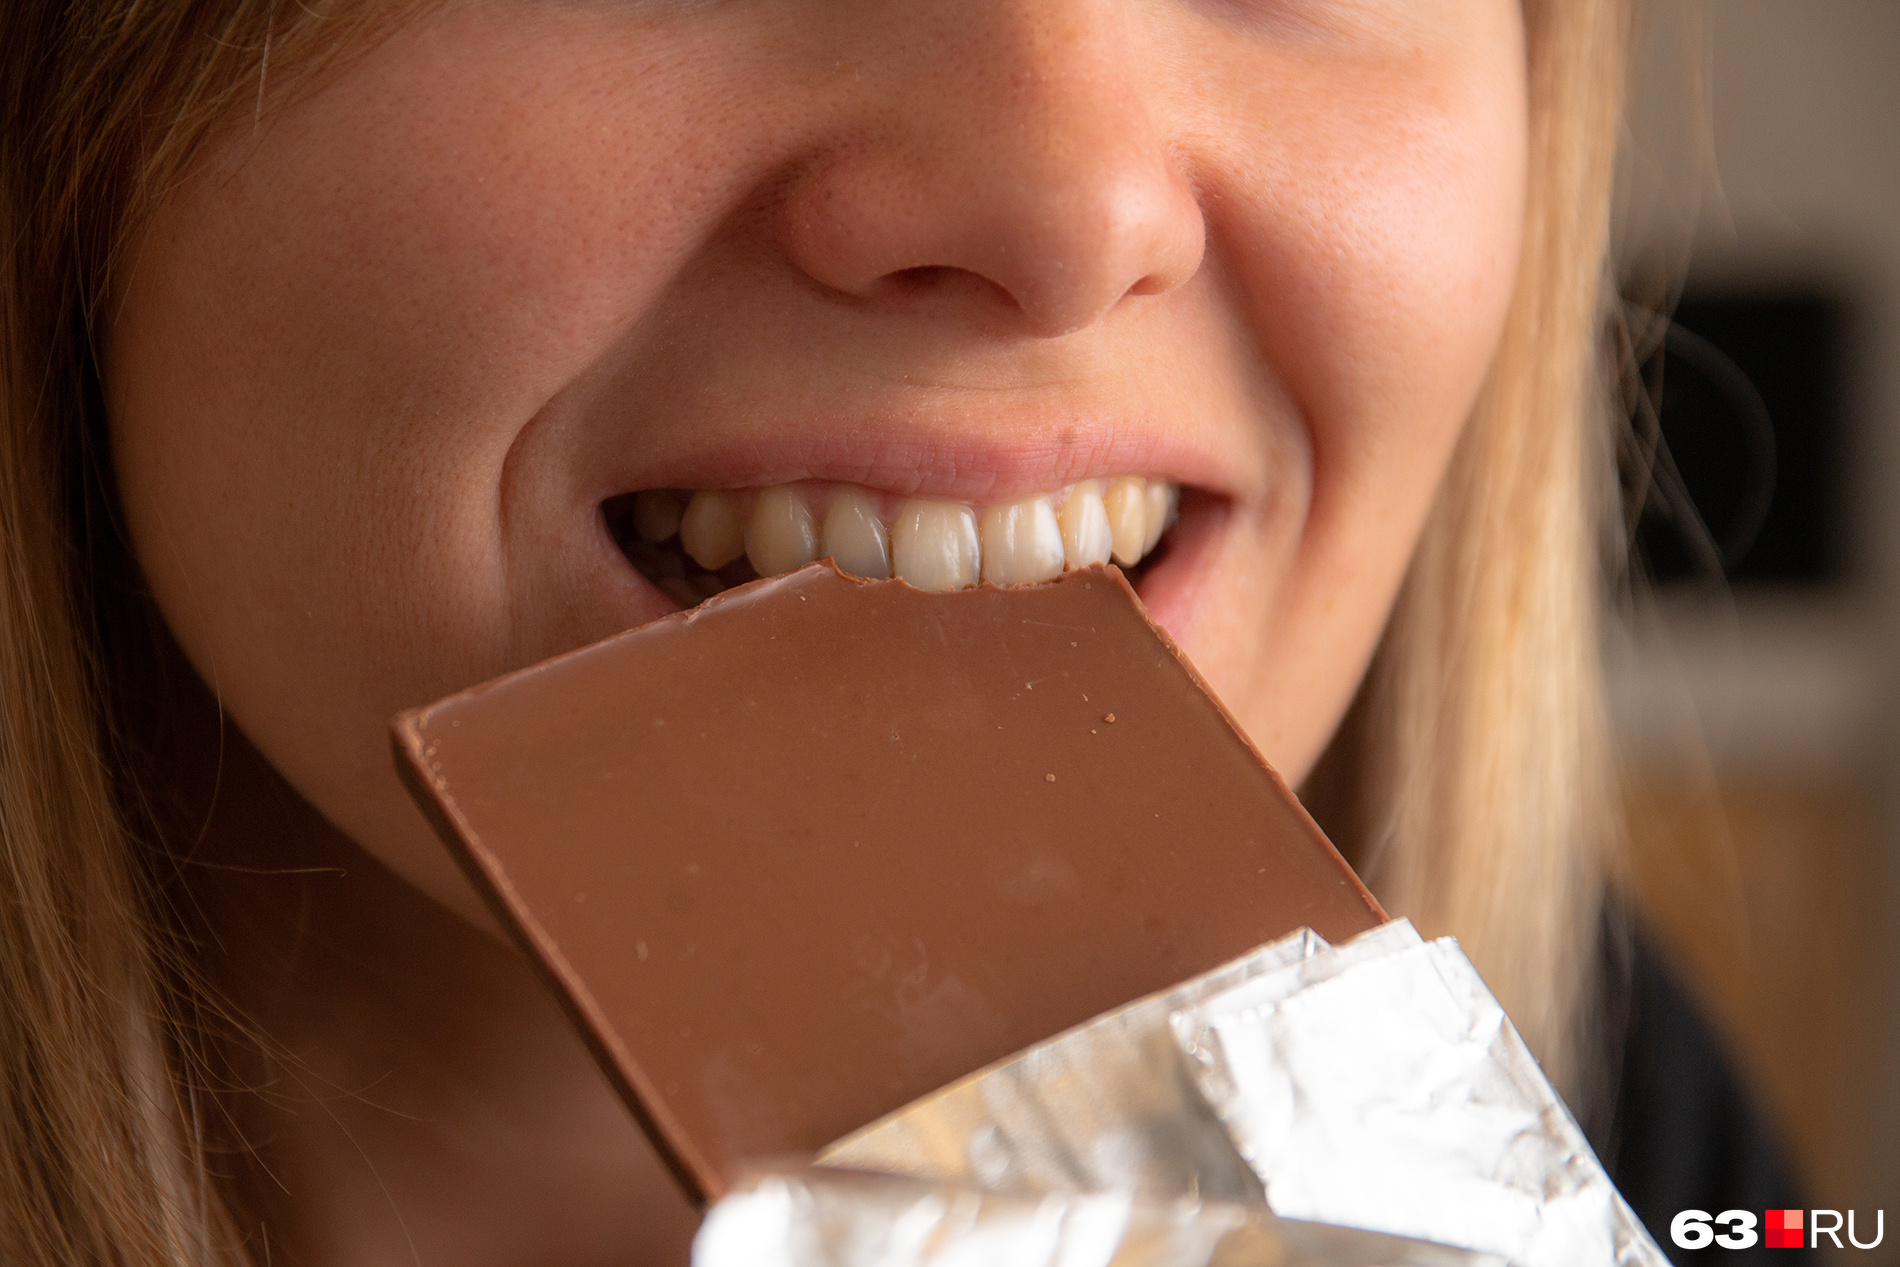 Толстеют ли от шоколада? / Чем вреден шоколад? - 11 июля 2019 - tolyatty.ru